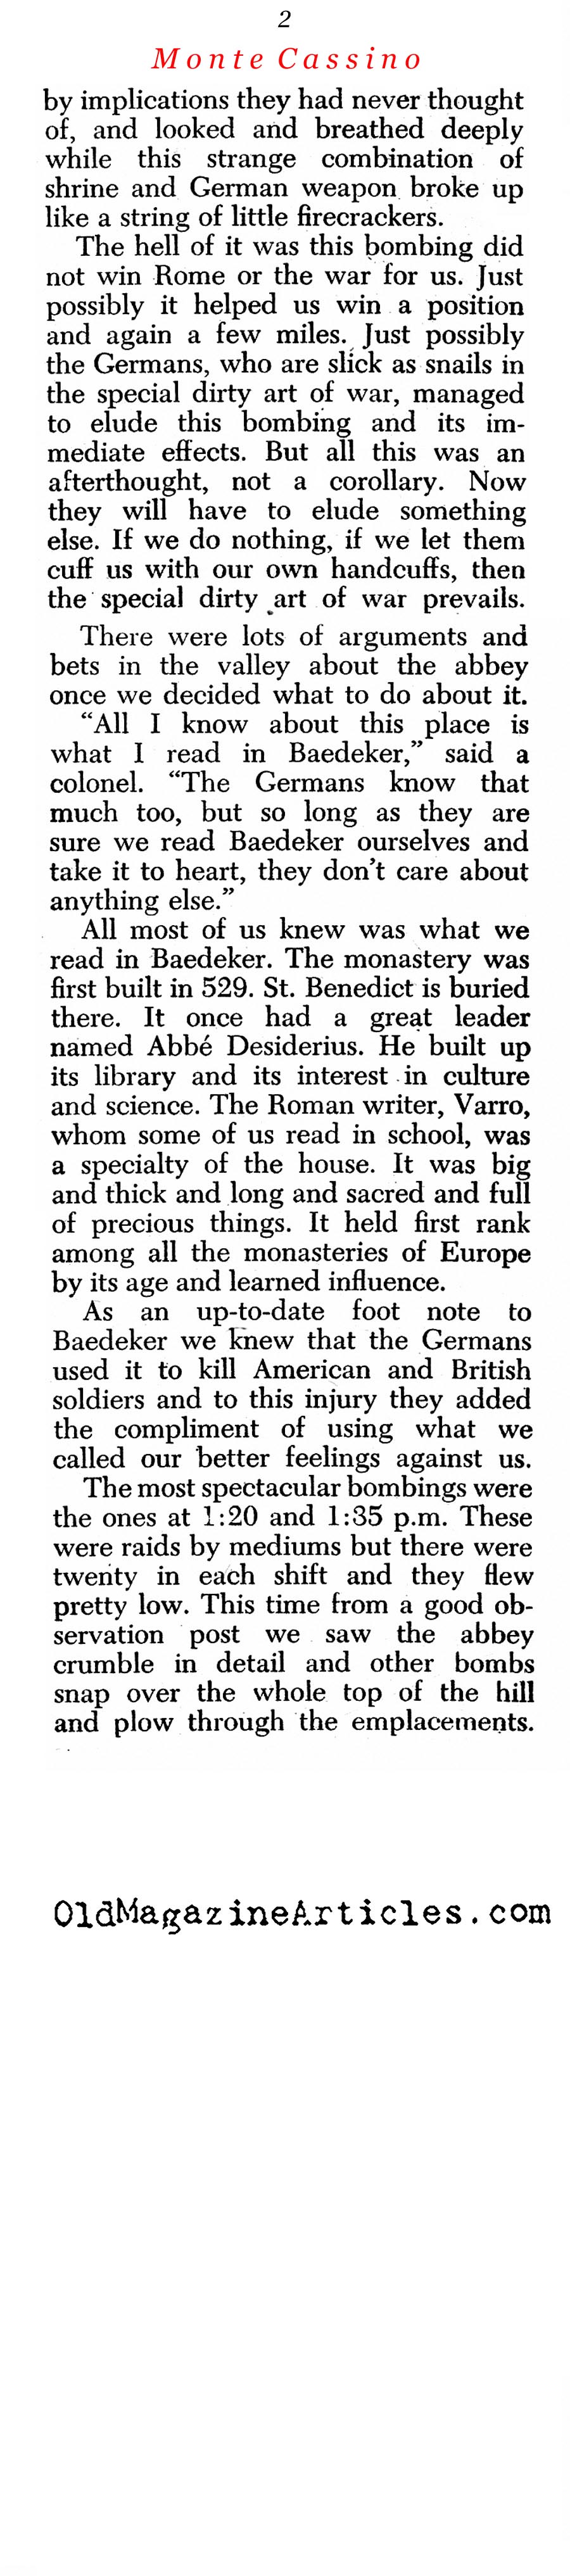 The Bombing of Monte Cassino (Newsweek Magazine, 1944)